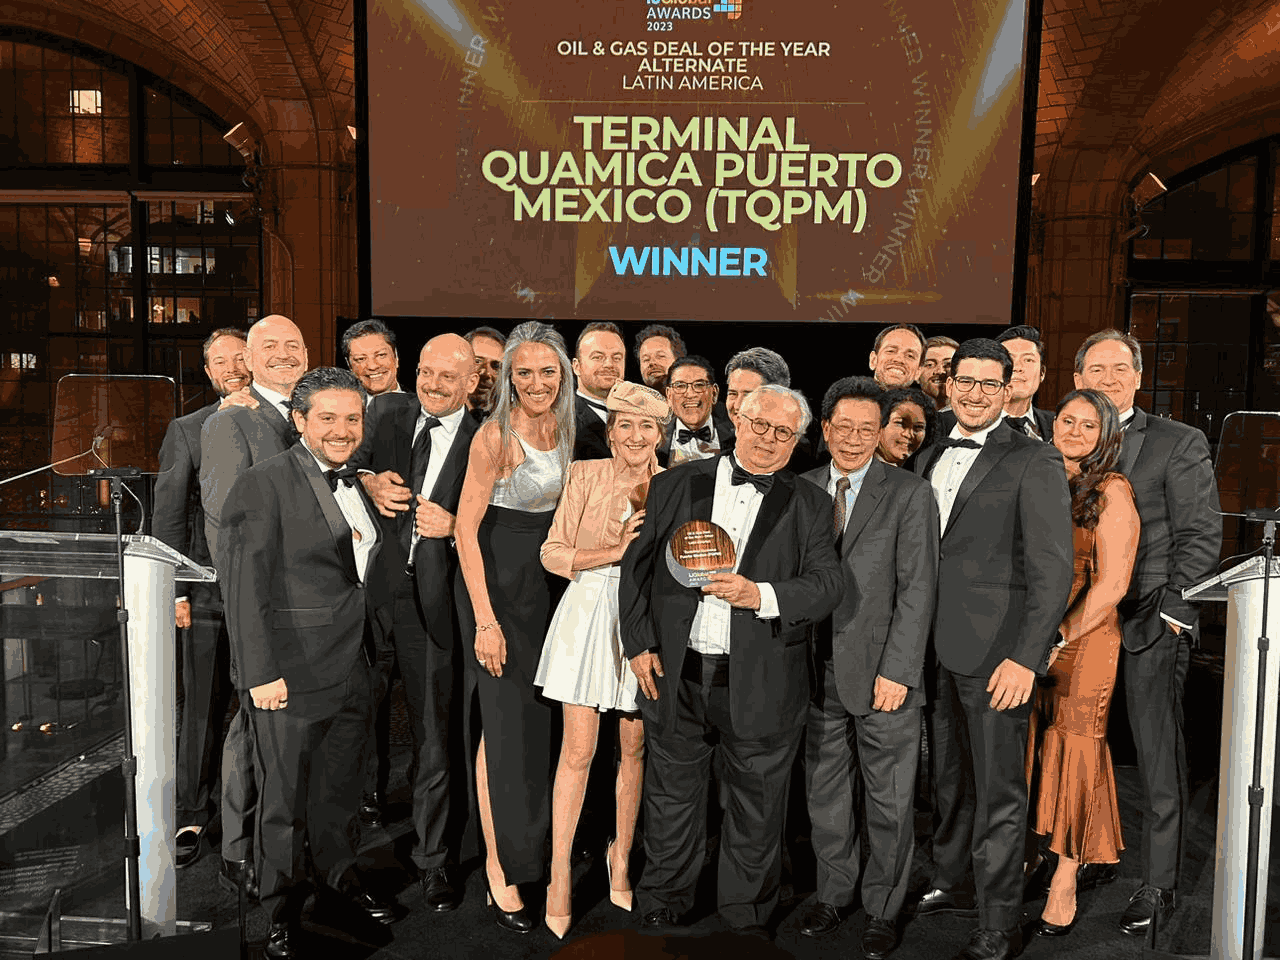  Braskem Idesa, Advario e Terminal Química Puerto México ganham prêmio no IJGlobal Awards Nova York